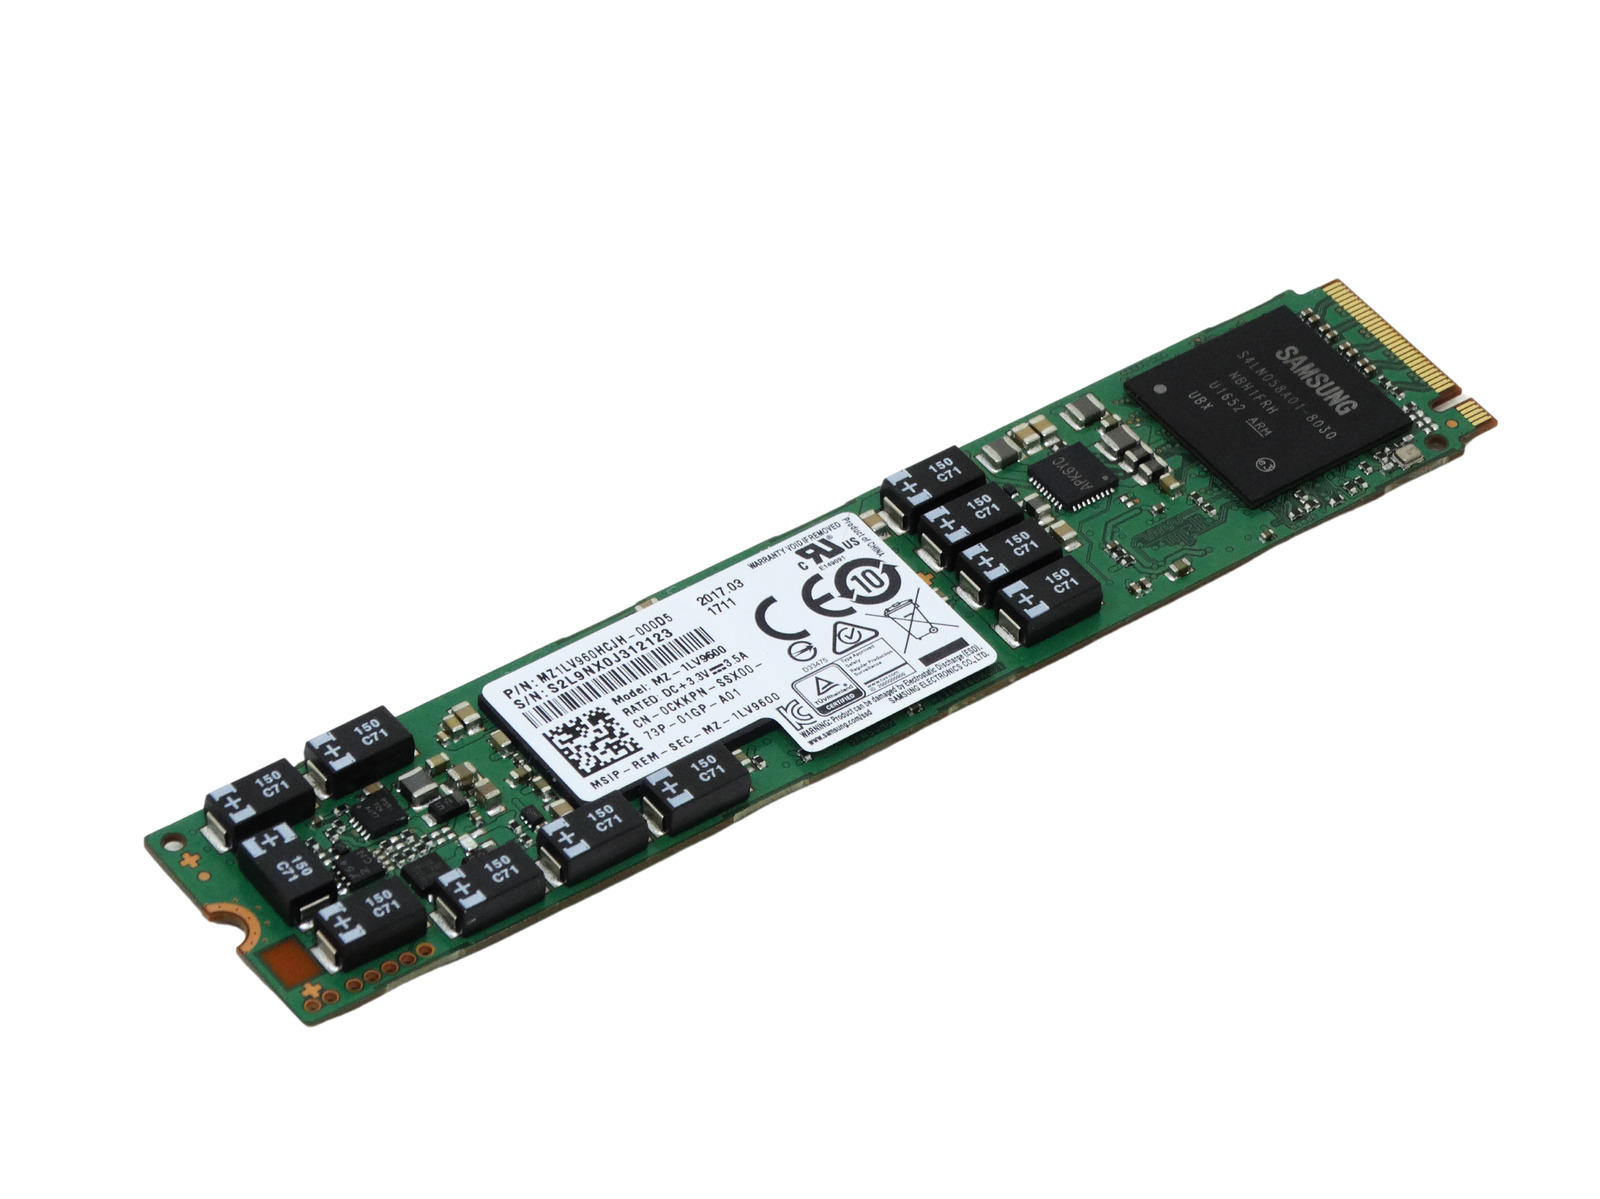 CKKPN Dell / Samsung PM953 M.2 NVMe PCIe 3.0 x4 SSD MZ-1LV9600 MZ1LV960HCJH 